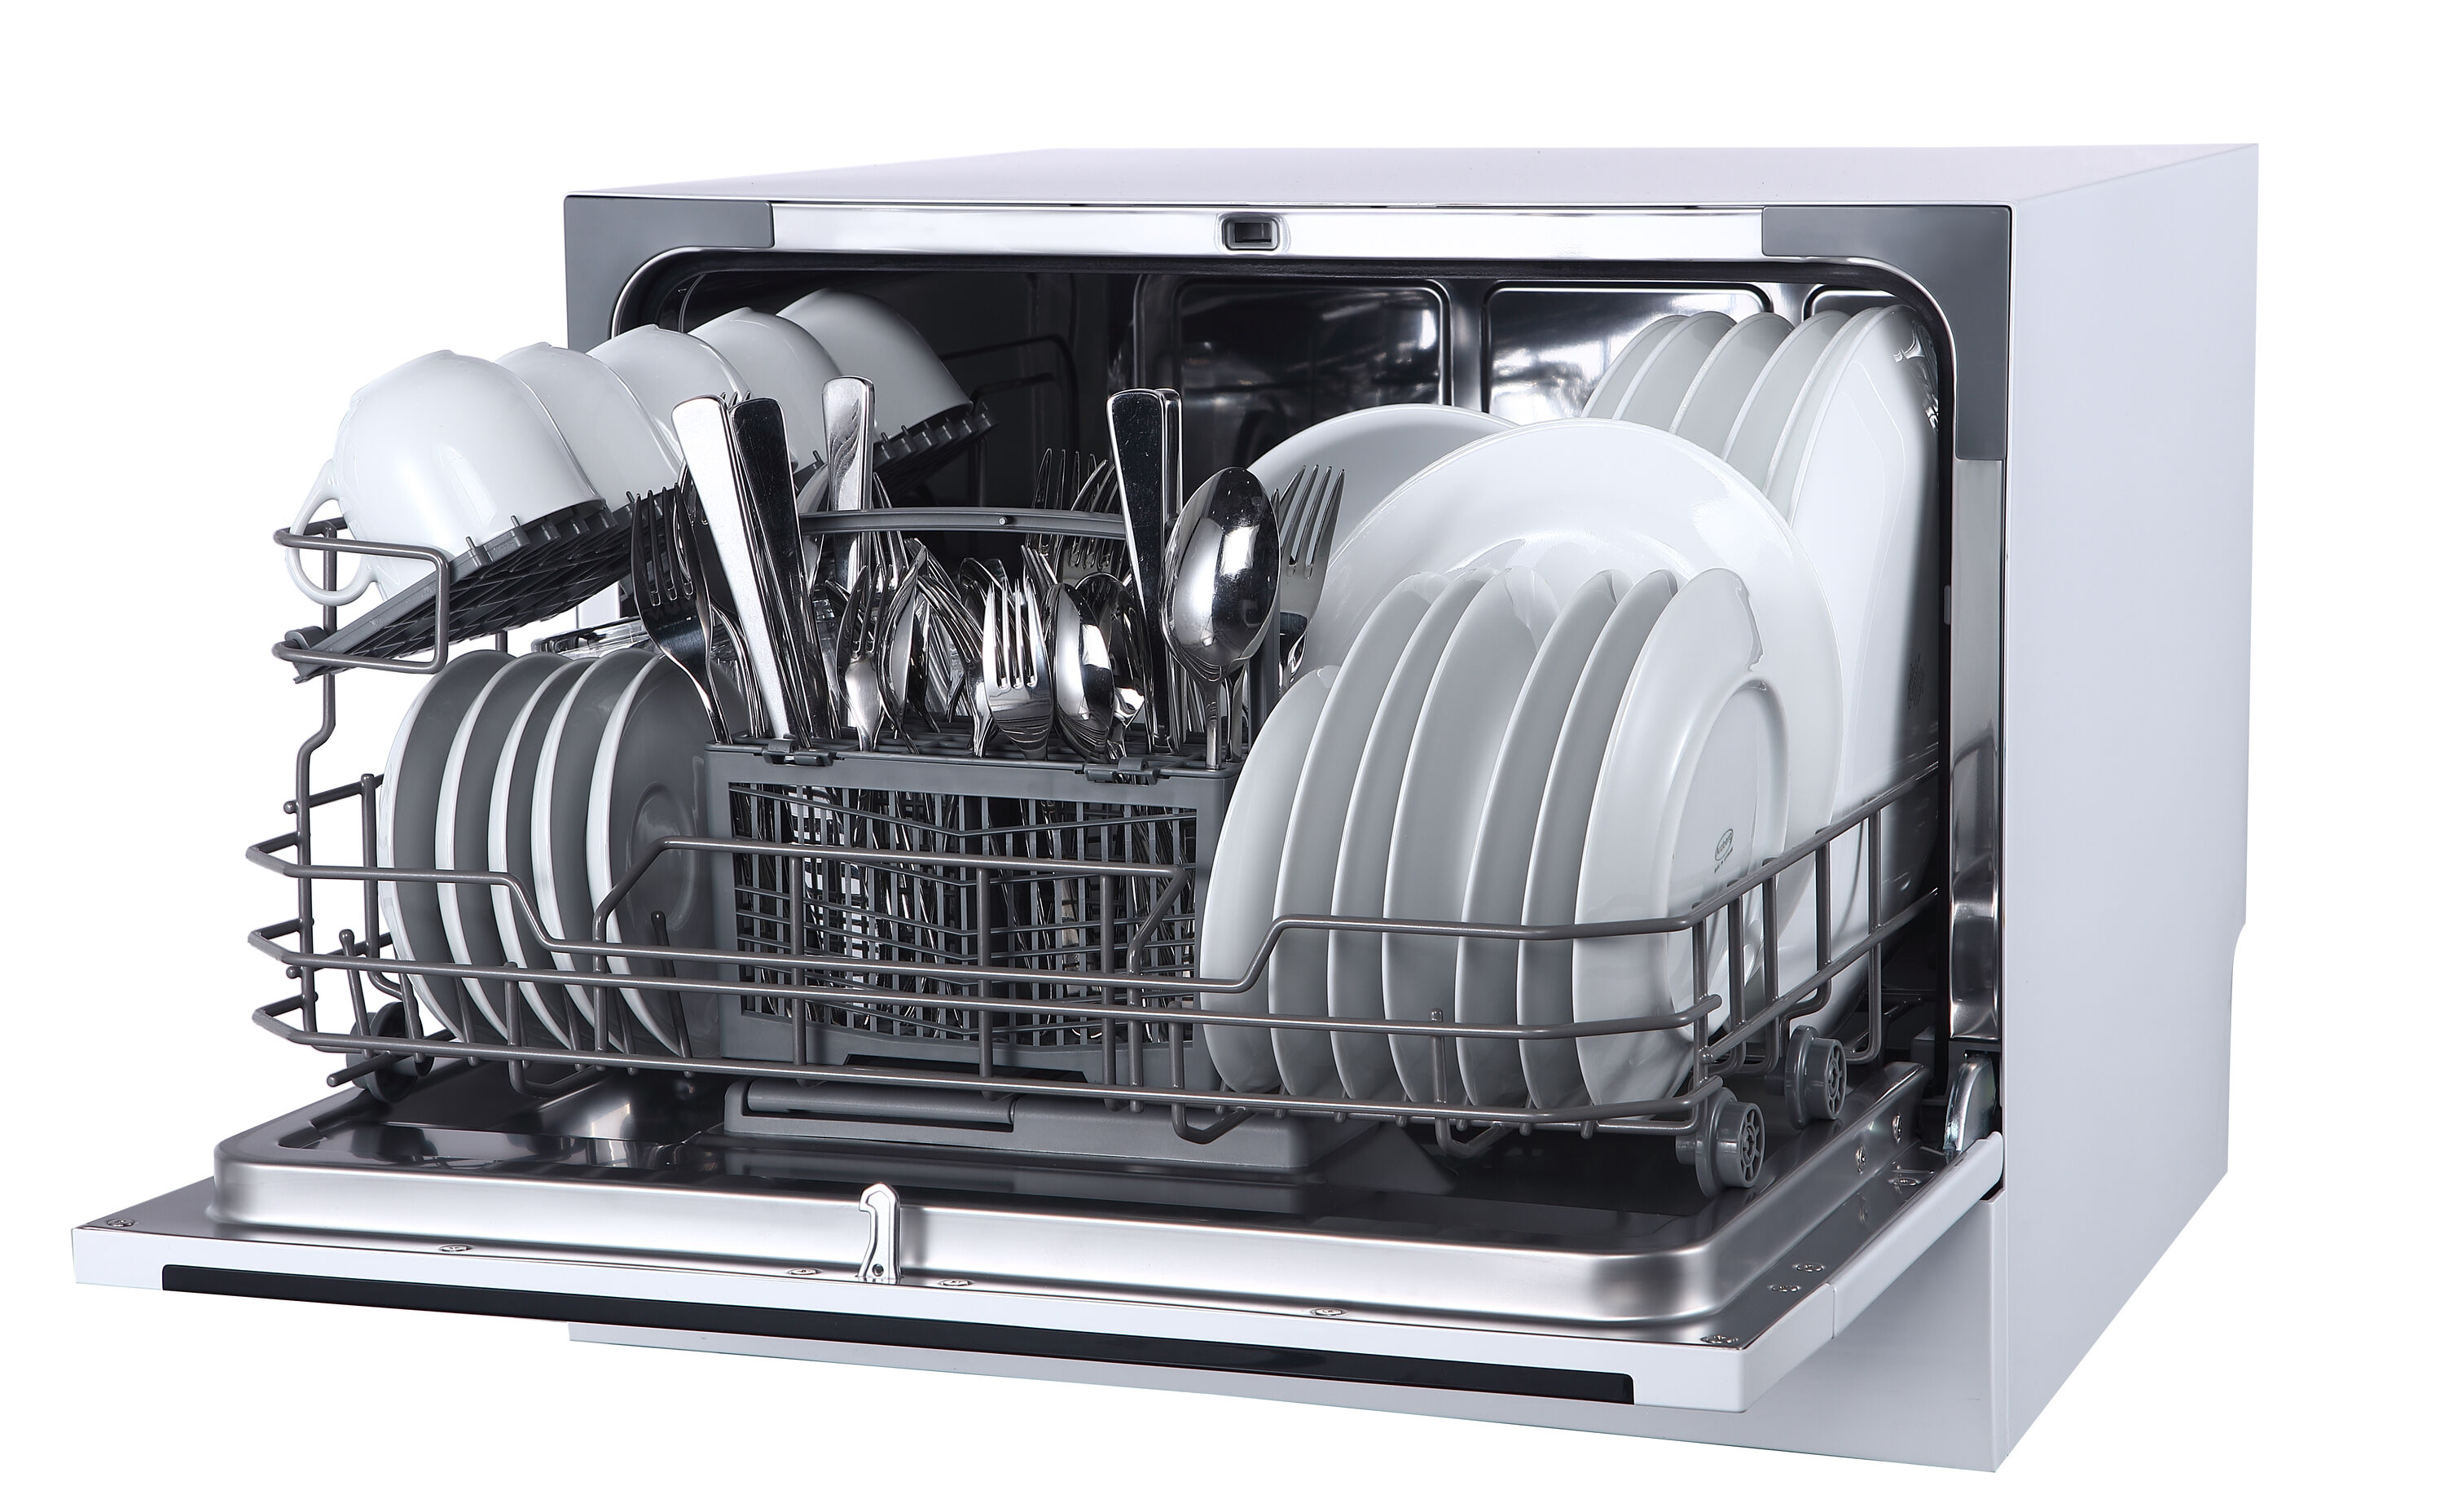 Lave-vaisselle professionnel 50 x 60 cm pour casseroles et plateaux -  595x730x1340 mm - Hendi food service equipement - Lave-Vaisselle  Professionnels - référence 236574 - Stock-Direct CHR